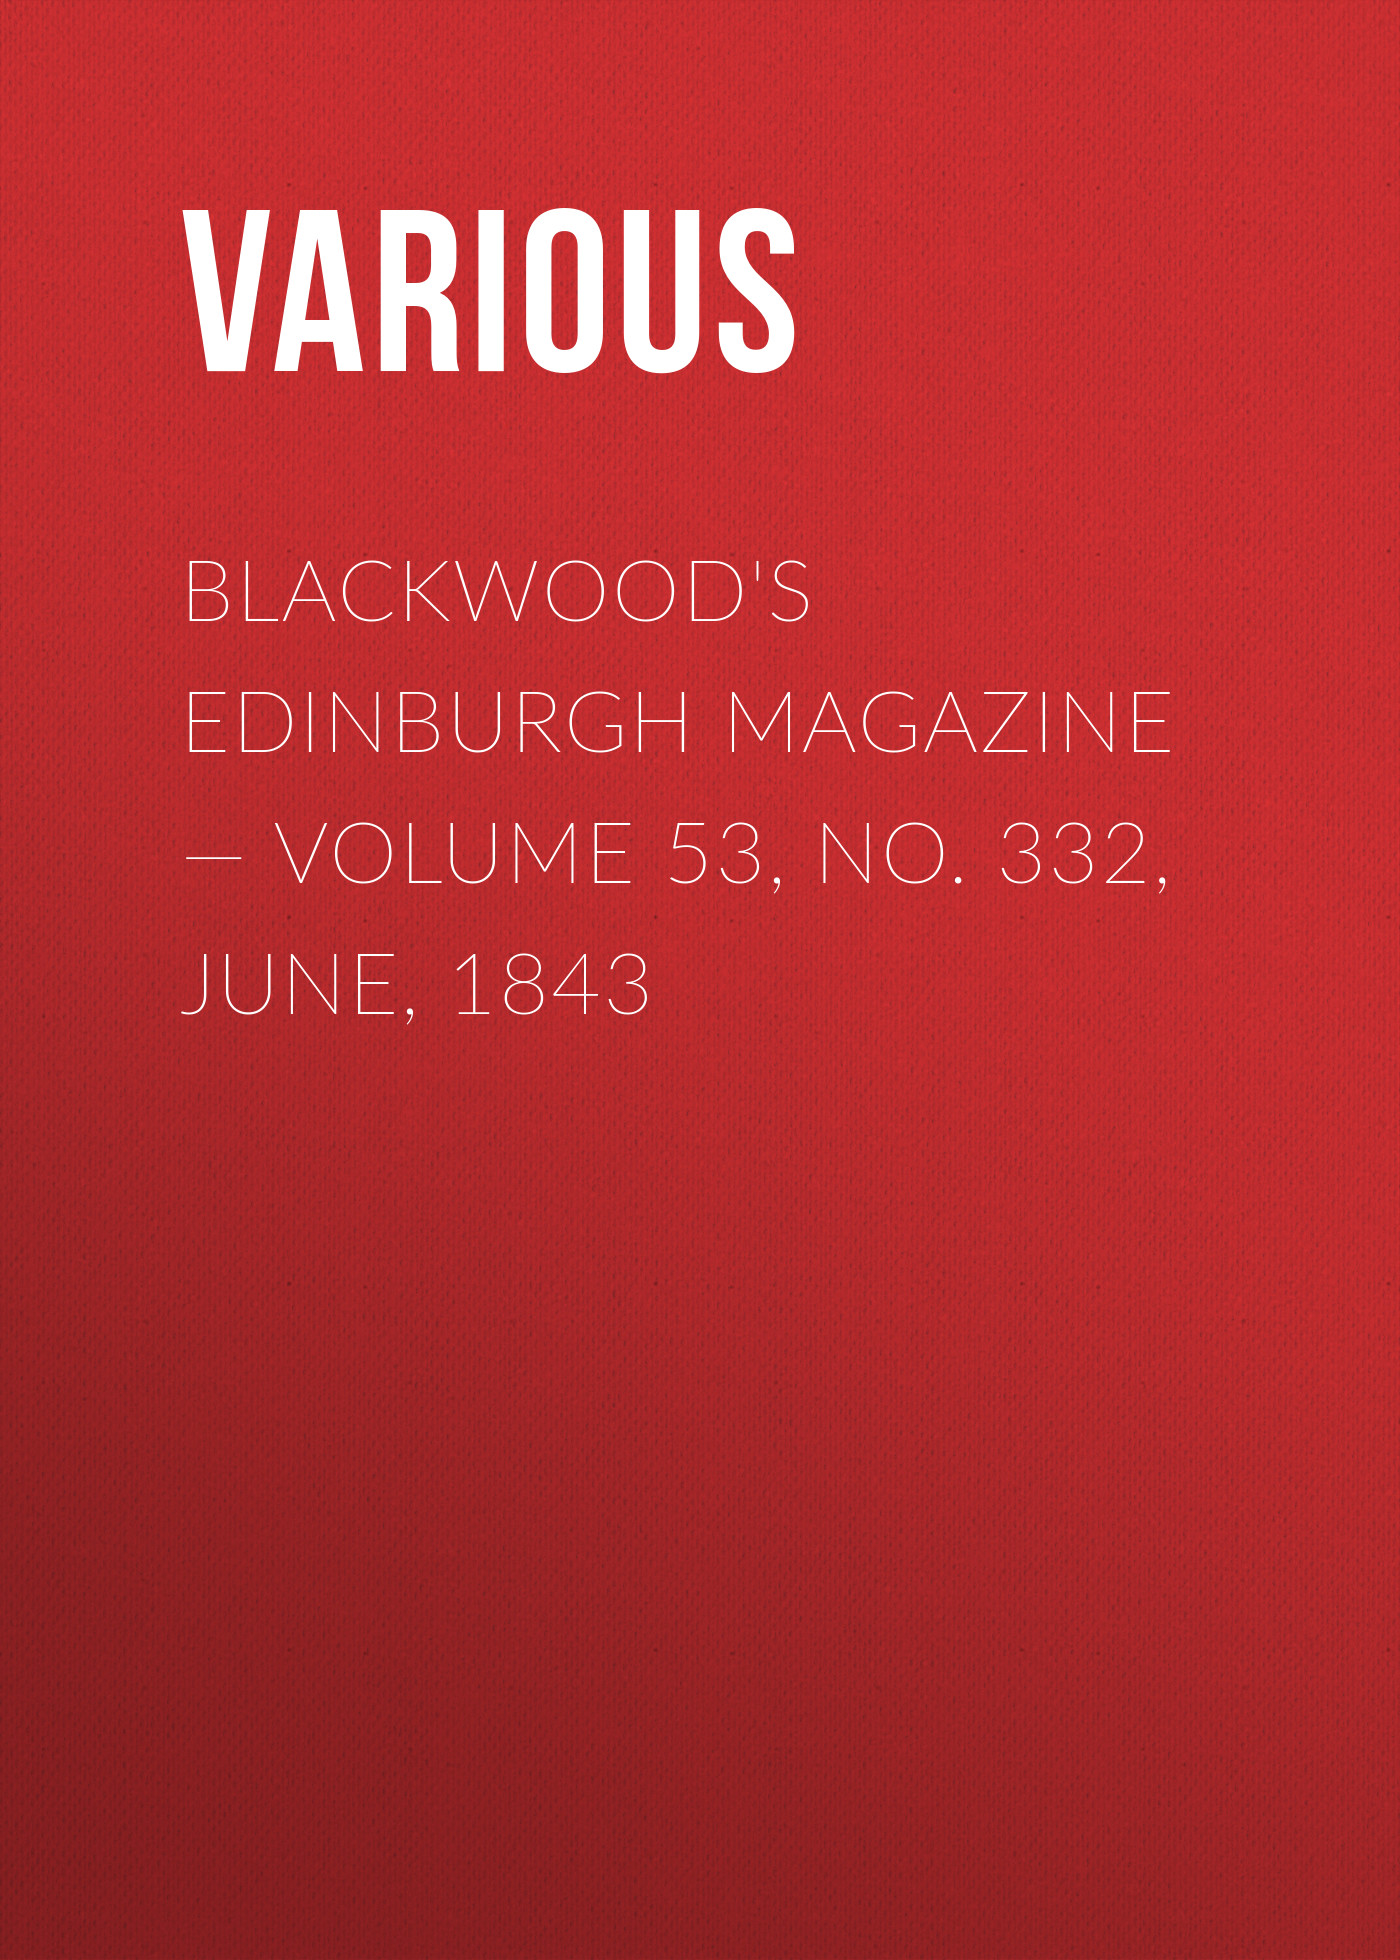 Книга Blackwoods Edinburgh Magazine – Volume 53, No. 332, June, 1843 из серии , созданная  Various, может относится к жанру Зарубежная старинная литература, Журналы, Зарубежная образовательная литература. Стоимость электронной книги Blackwoods Edinburgh Magazine – Volume 53, No. 332, June, 1843 с идентификатором 35491887 составляет 0 руб.